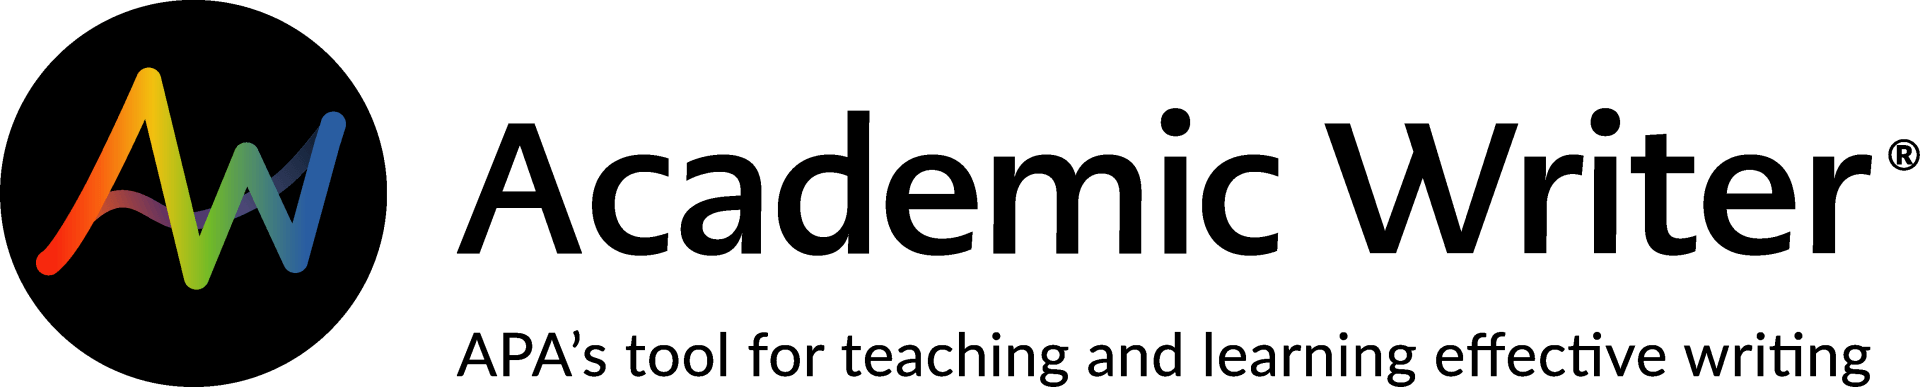 Academic_Writer_logo